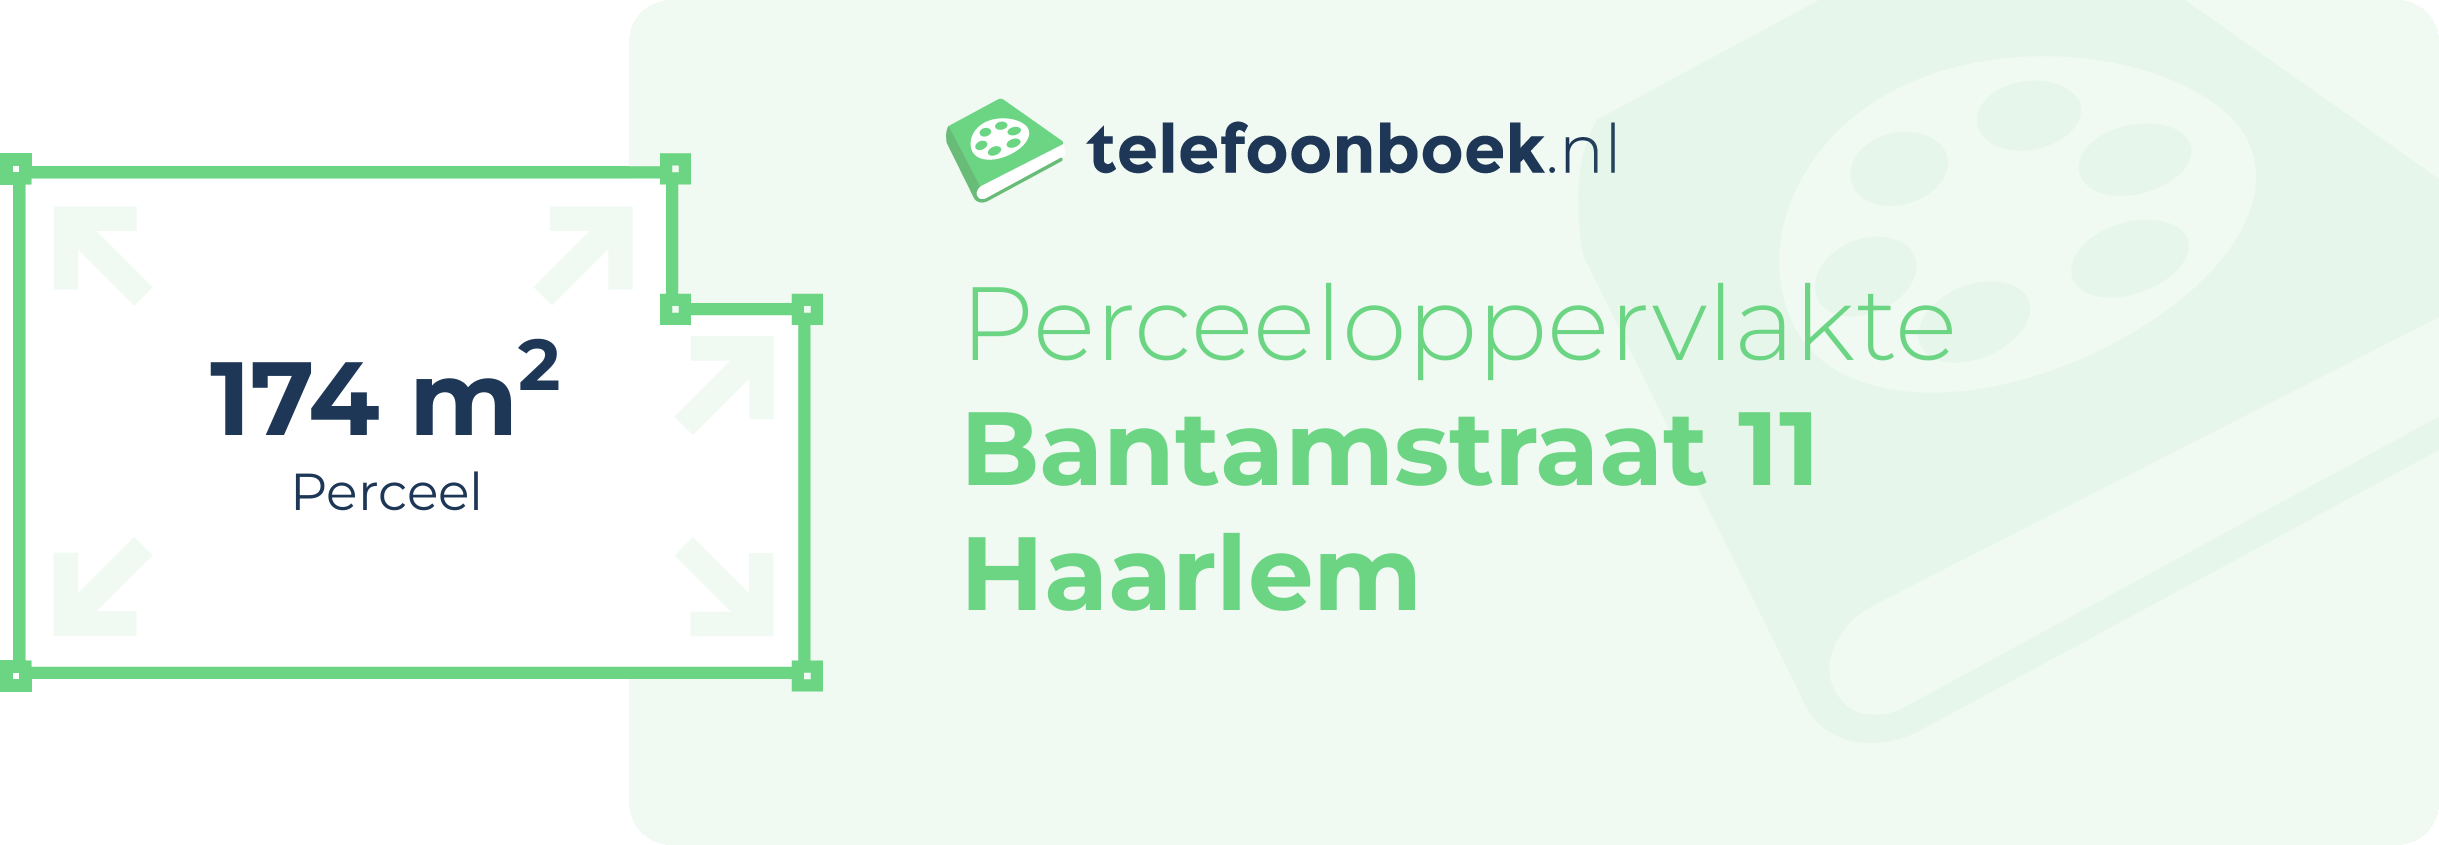 Perceeloppervlakte Bantamstraat 11 Haarlem